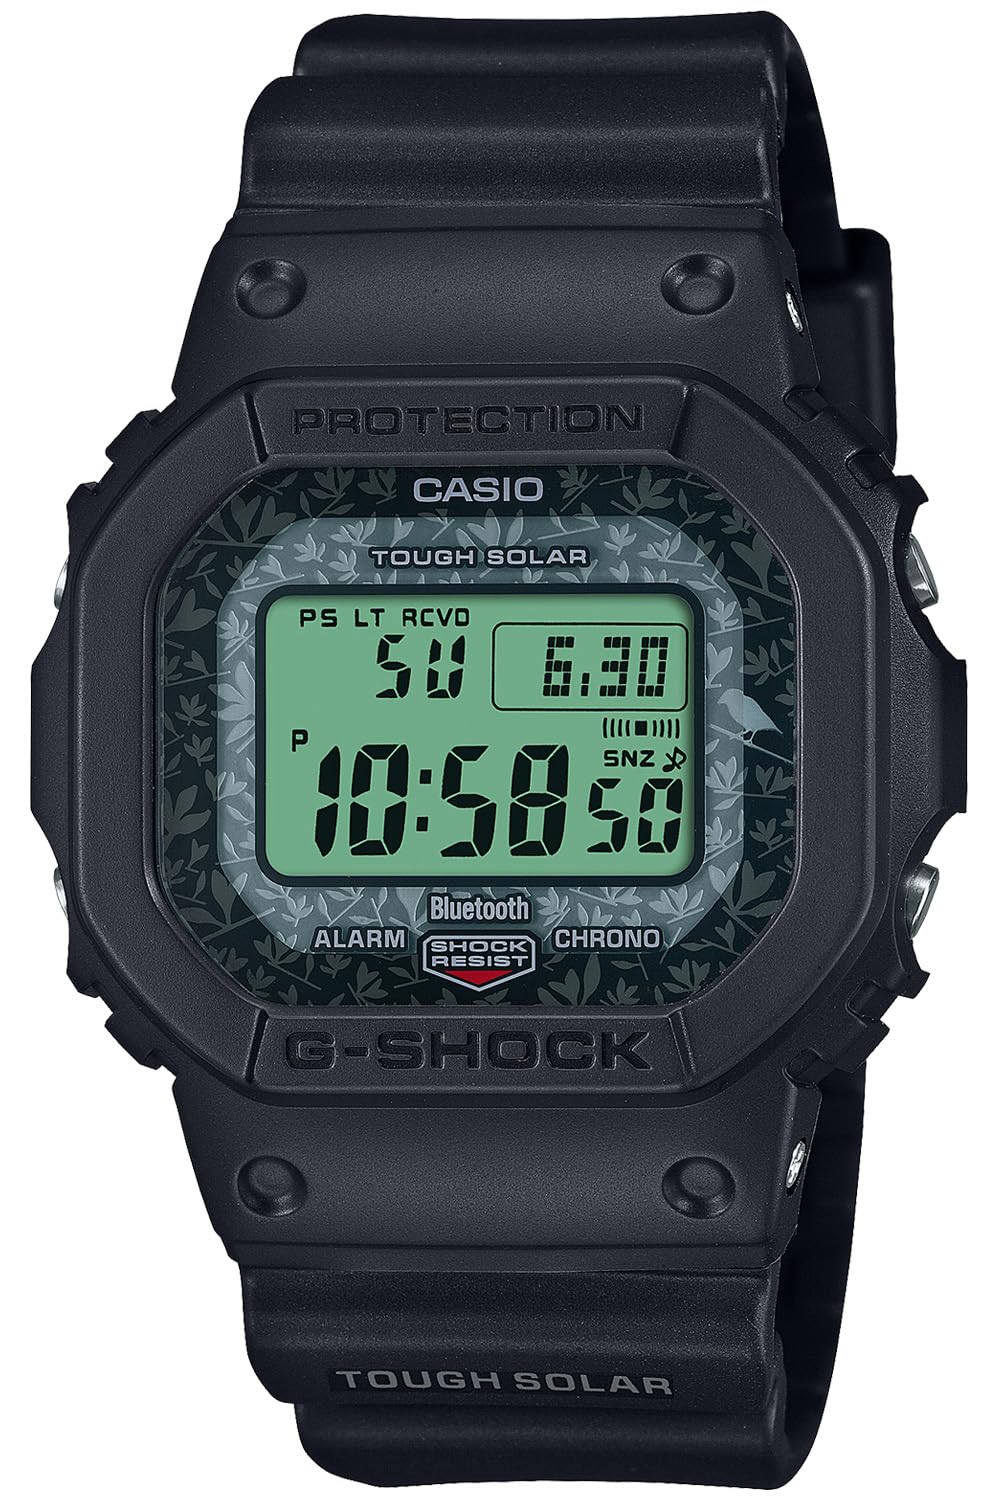 ジーショック [カシオ] 腕時計 【国内正規品】チャールズ・ダーウィン財団コラボレーションモデル Bluetooth搭載 バイオマスプラスチック採用 GW-B5600CD-1A3JR メンズ ブラック - BanzaiHobby